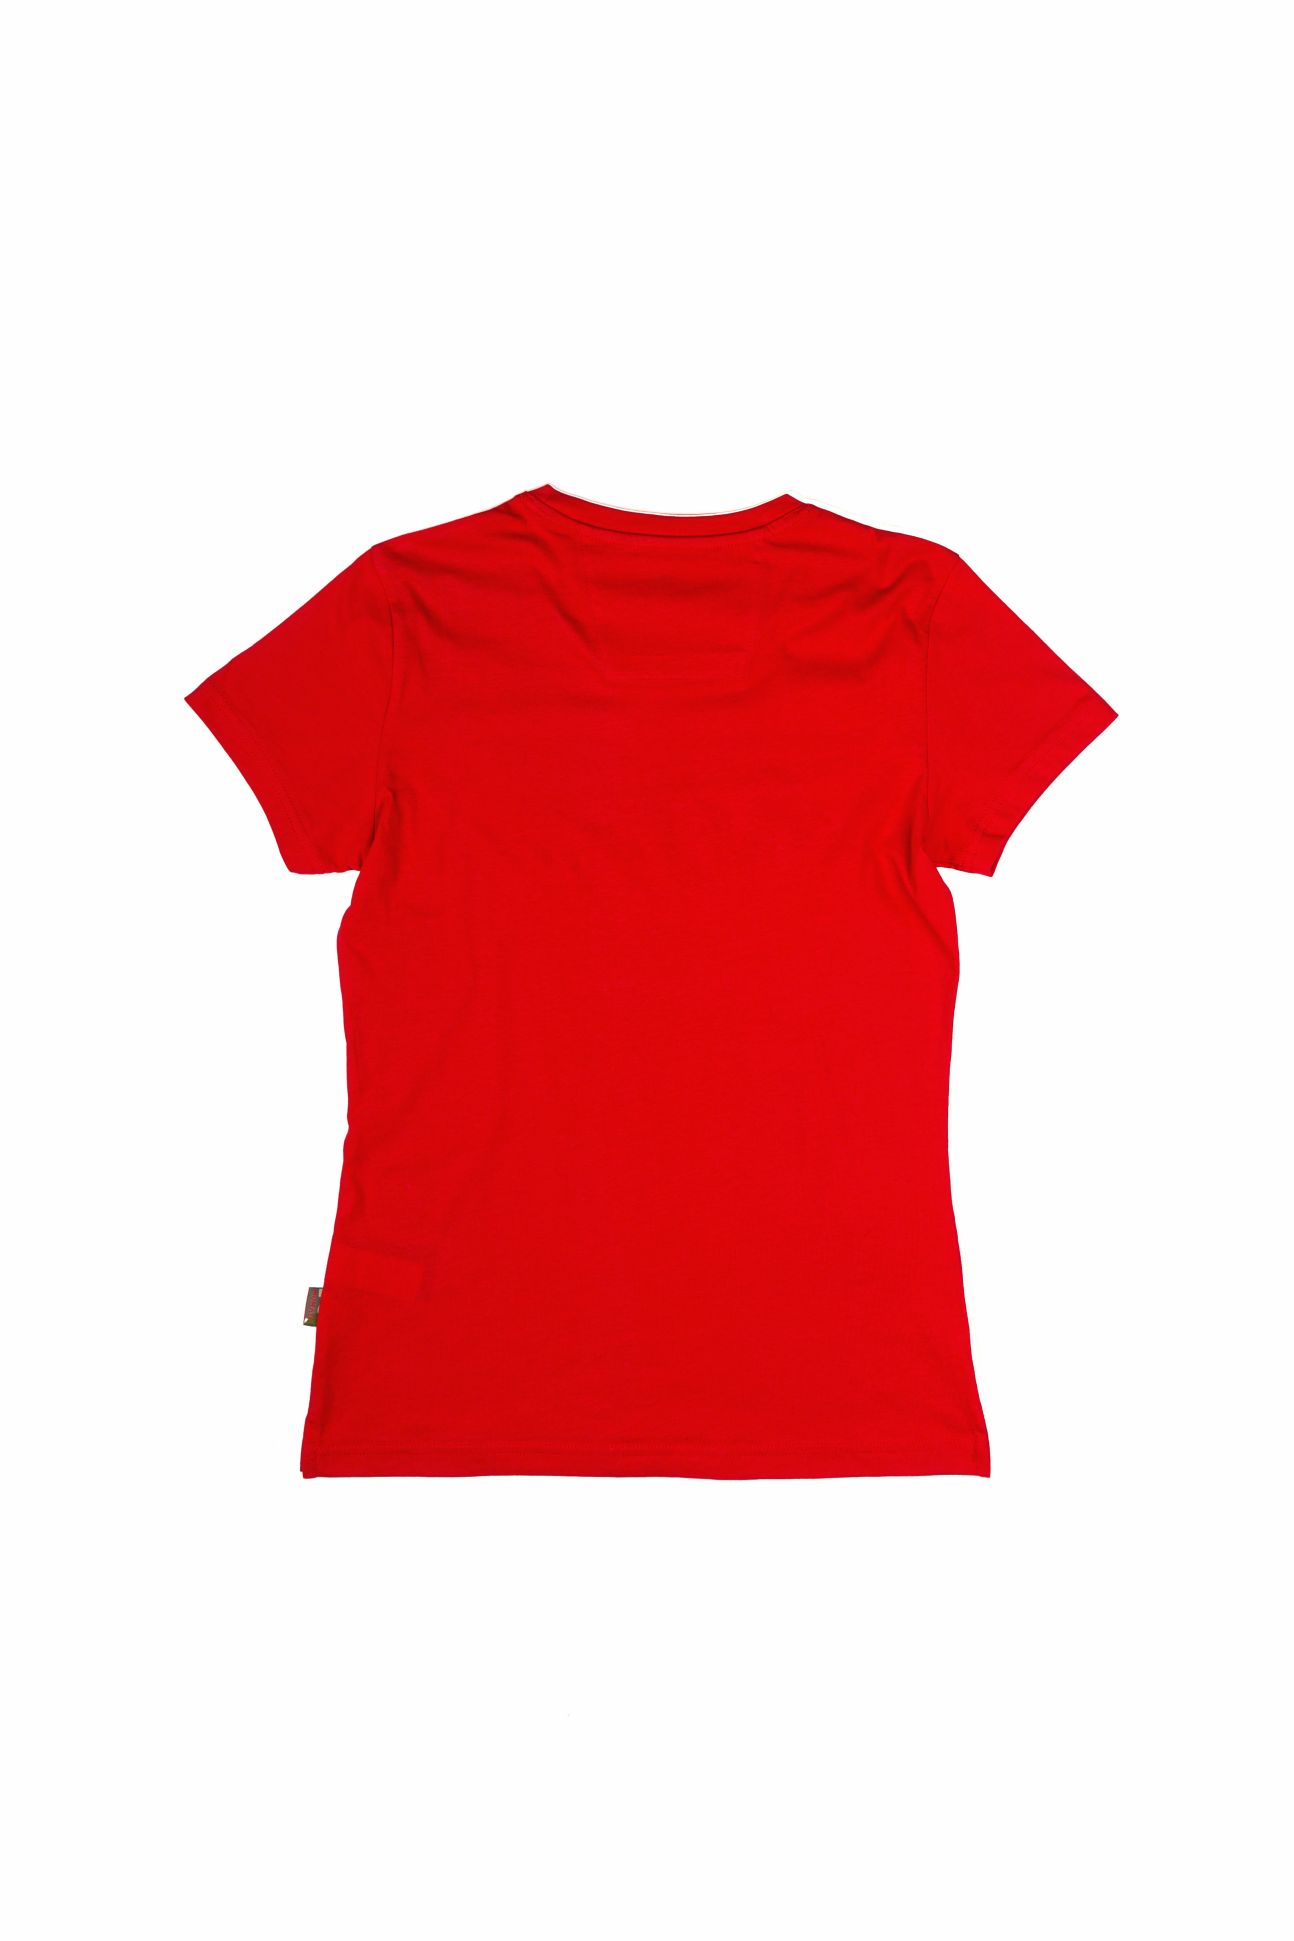 Mumaya BaselineShirt Lady Red